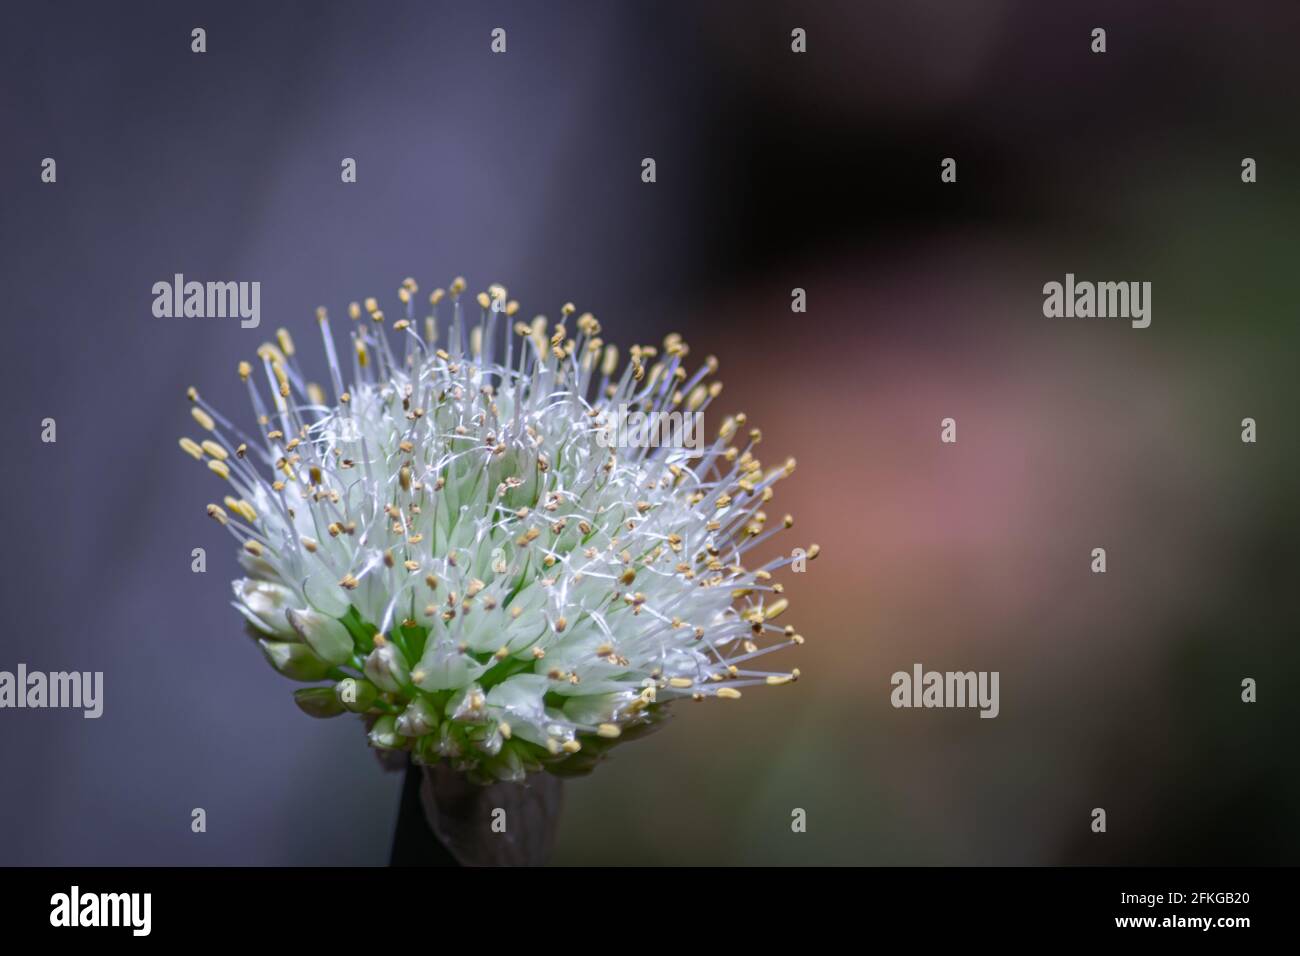 Nahaufnahme des weißen kugelförmigen Blütenkopfes einer Echinops blühende Pflanze Stockfoto